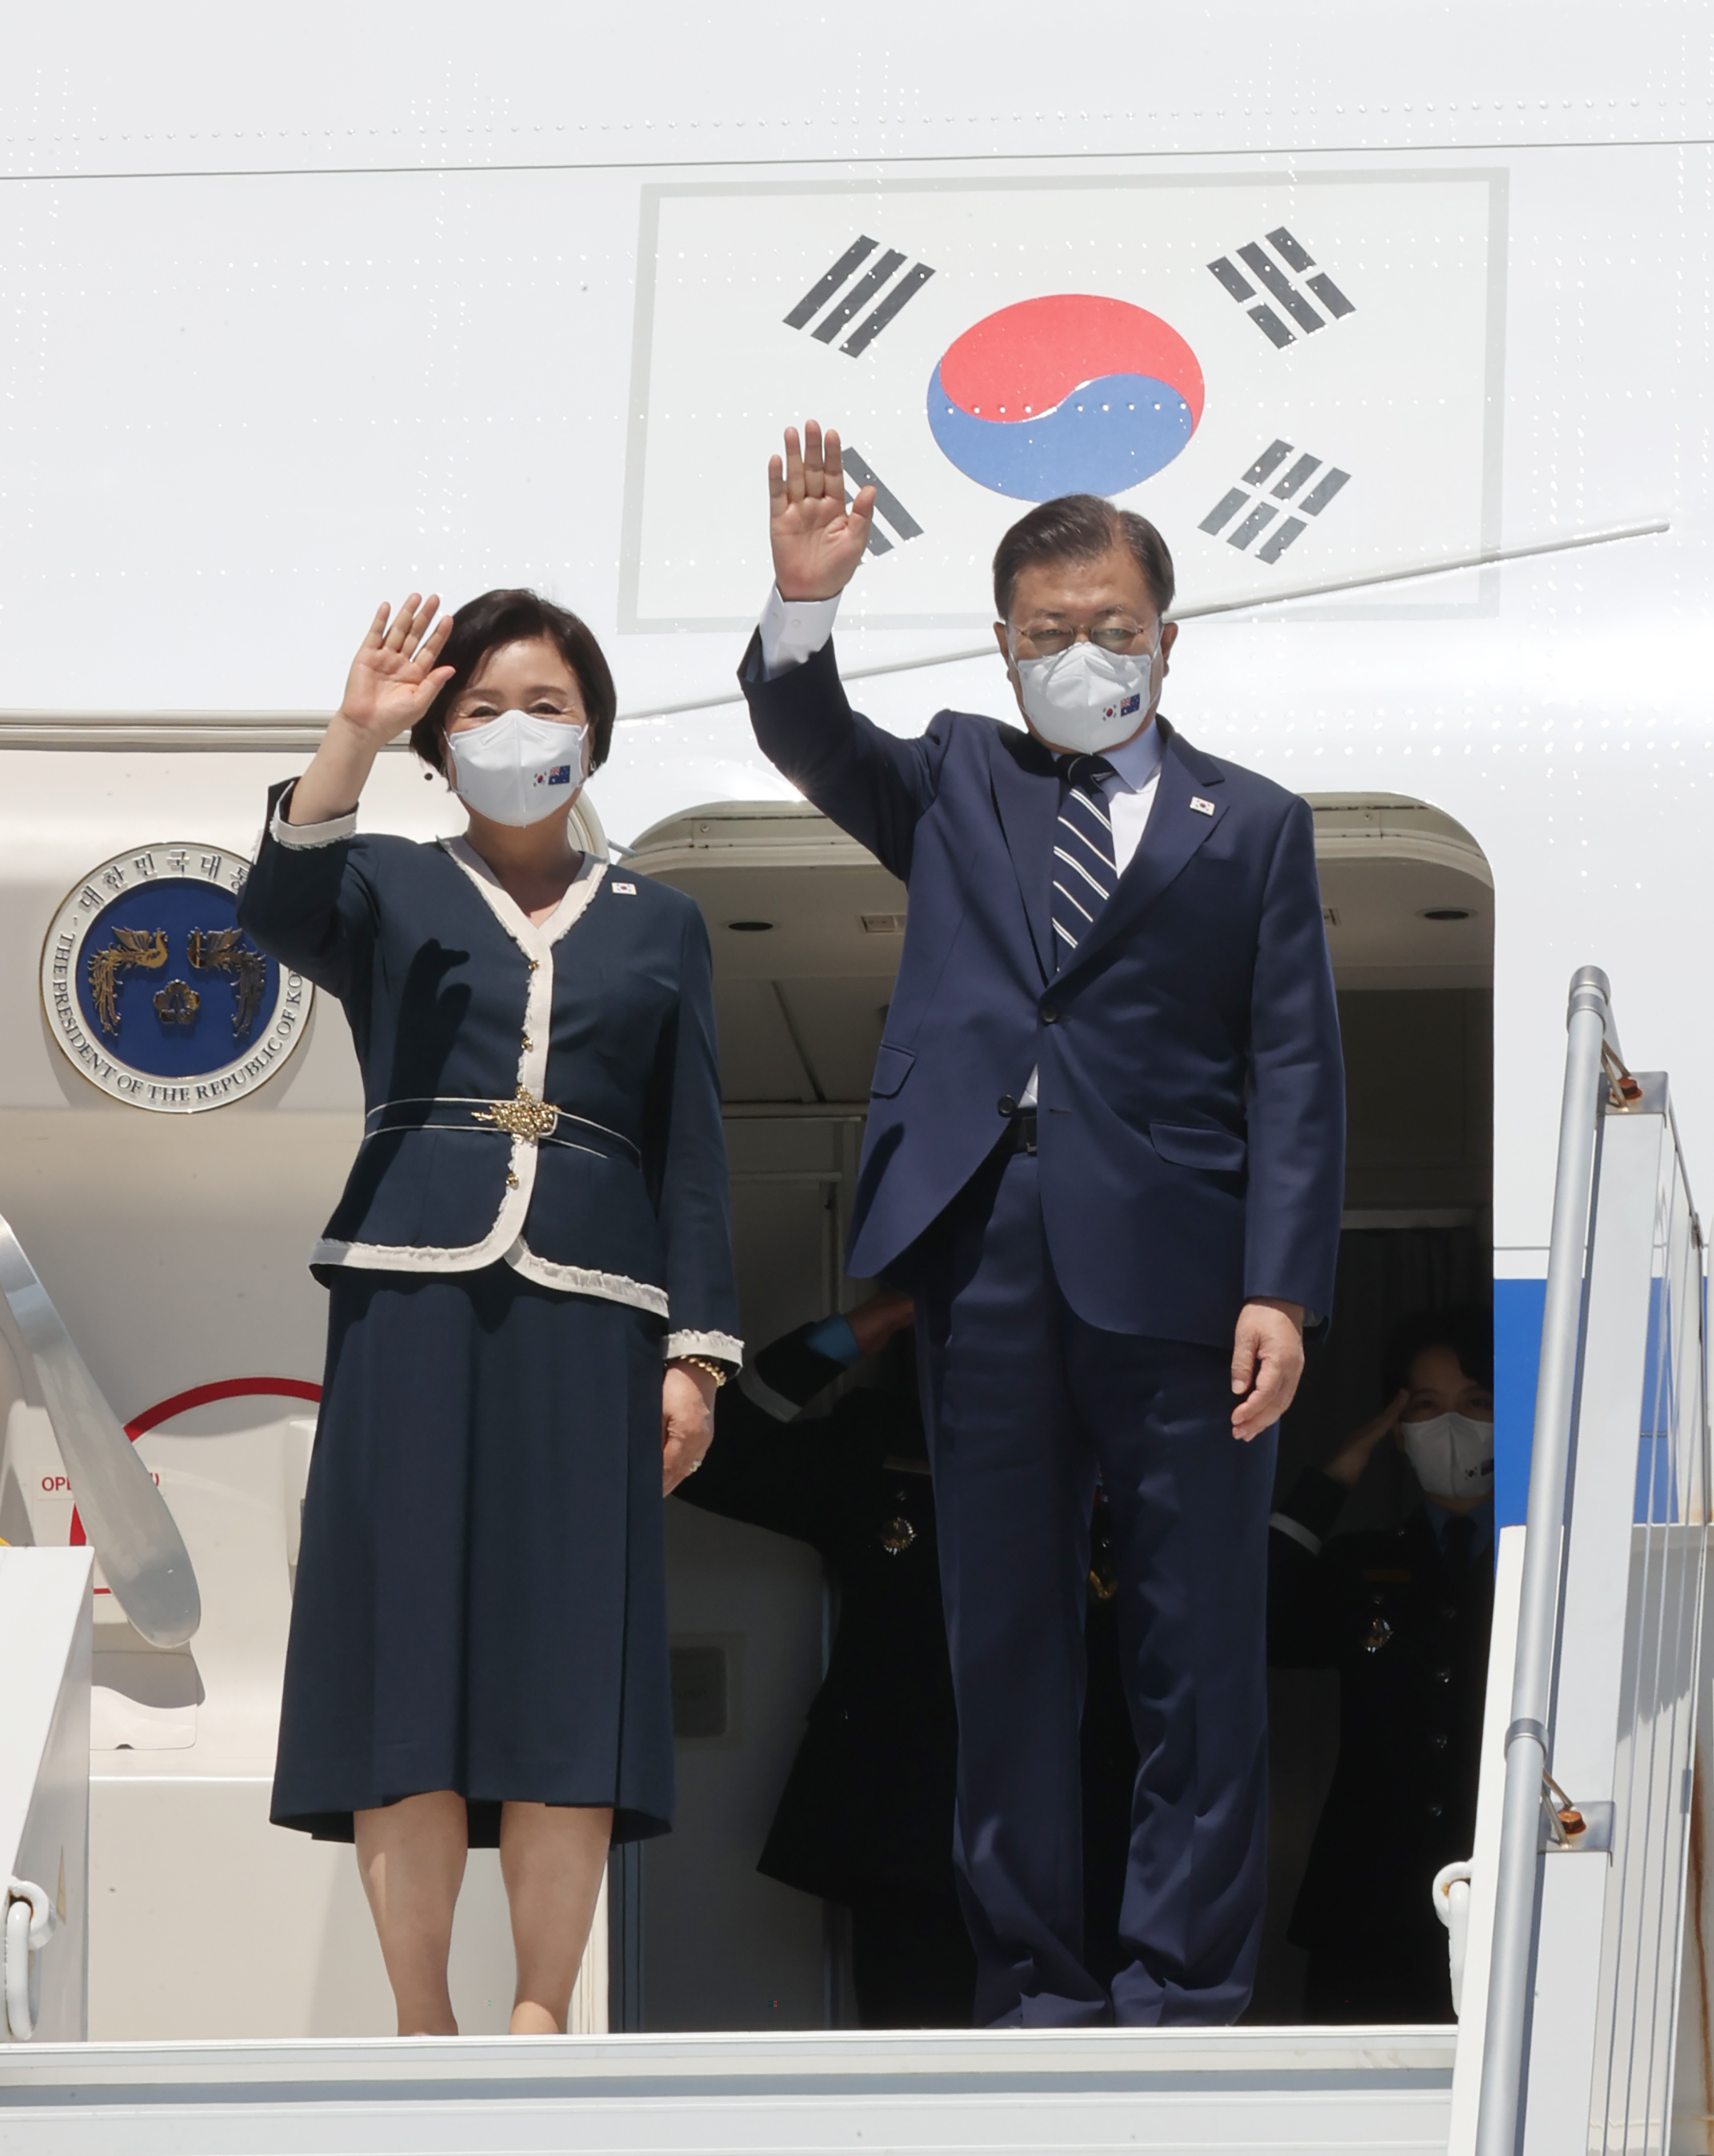 رئيس كوريا الجنوبية مون جيه-إن وزوجته كيم جونغ سوك يلوحان في مطار سيدني كينغسفورد سميث(د ب أ)